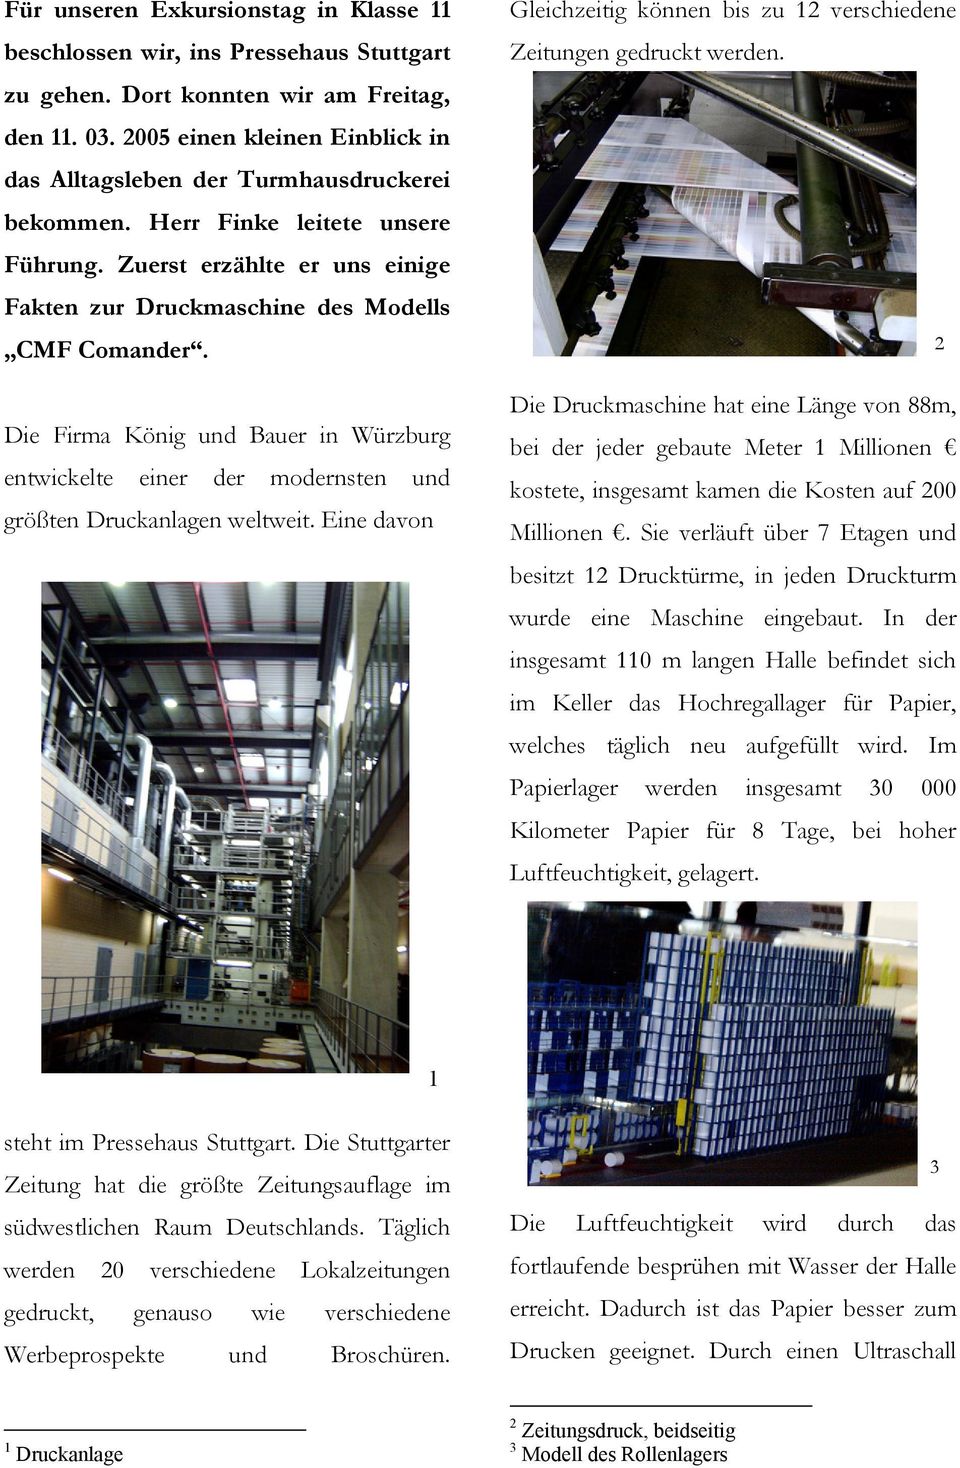 Die Firma König und Bauer in Würzburg entwickelte einer der modernsten und größten Druckanlagen weltweit. Eine davon Gleichzeitig können bis zu 12 verschiedene Zeitungen gedruckt werden.